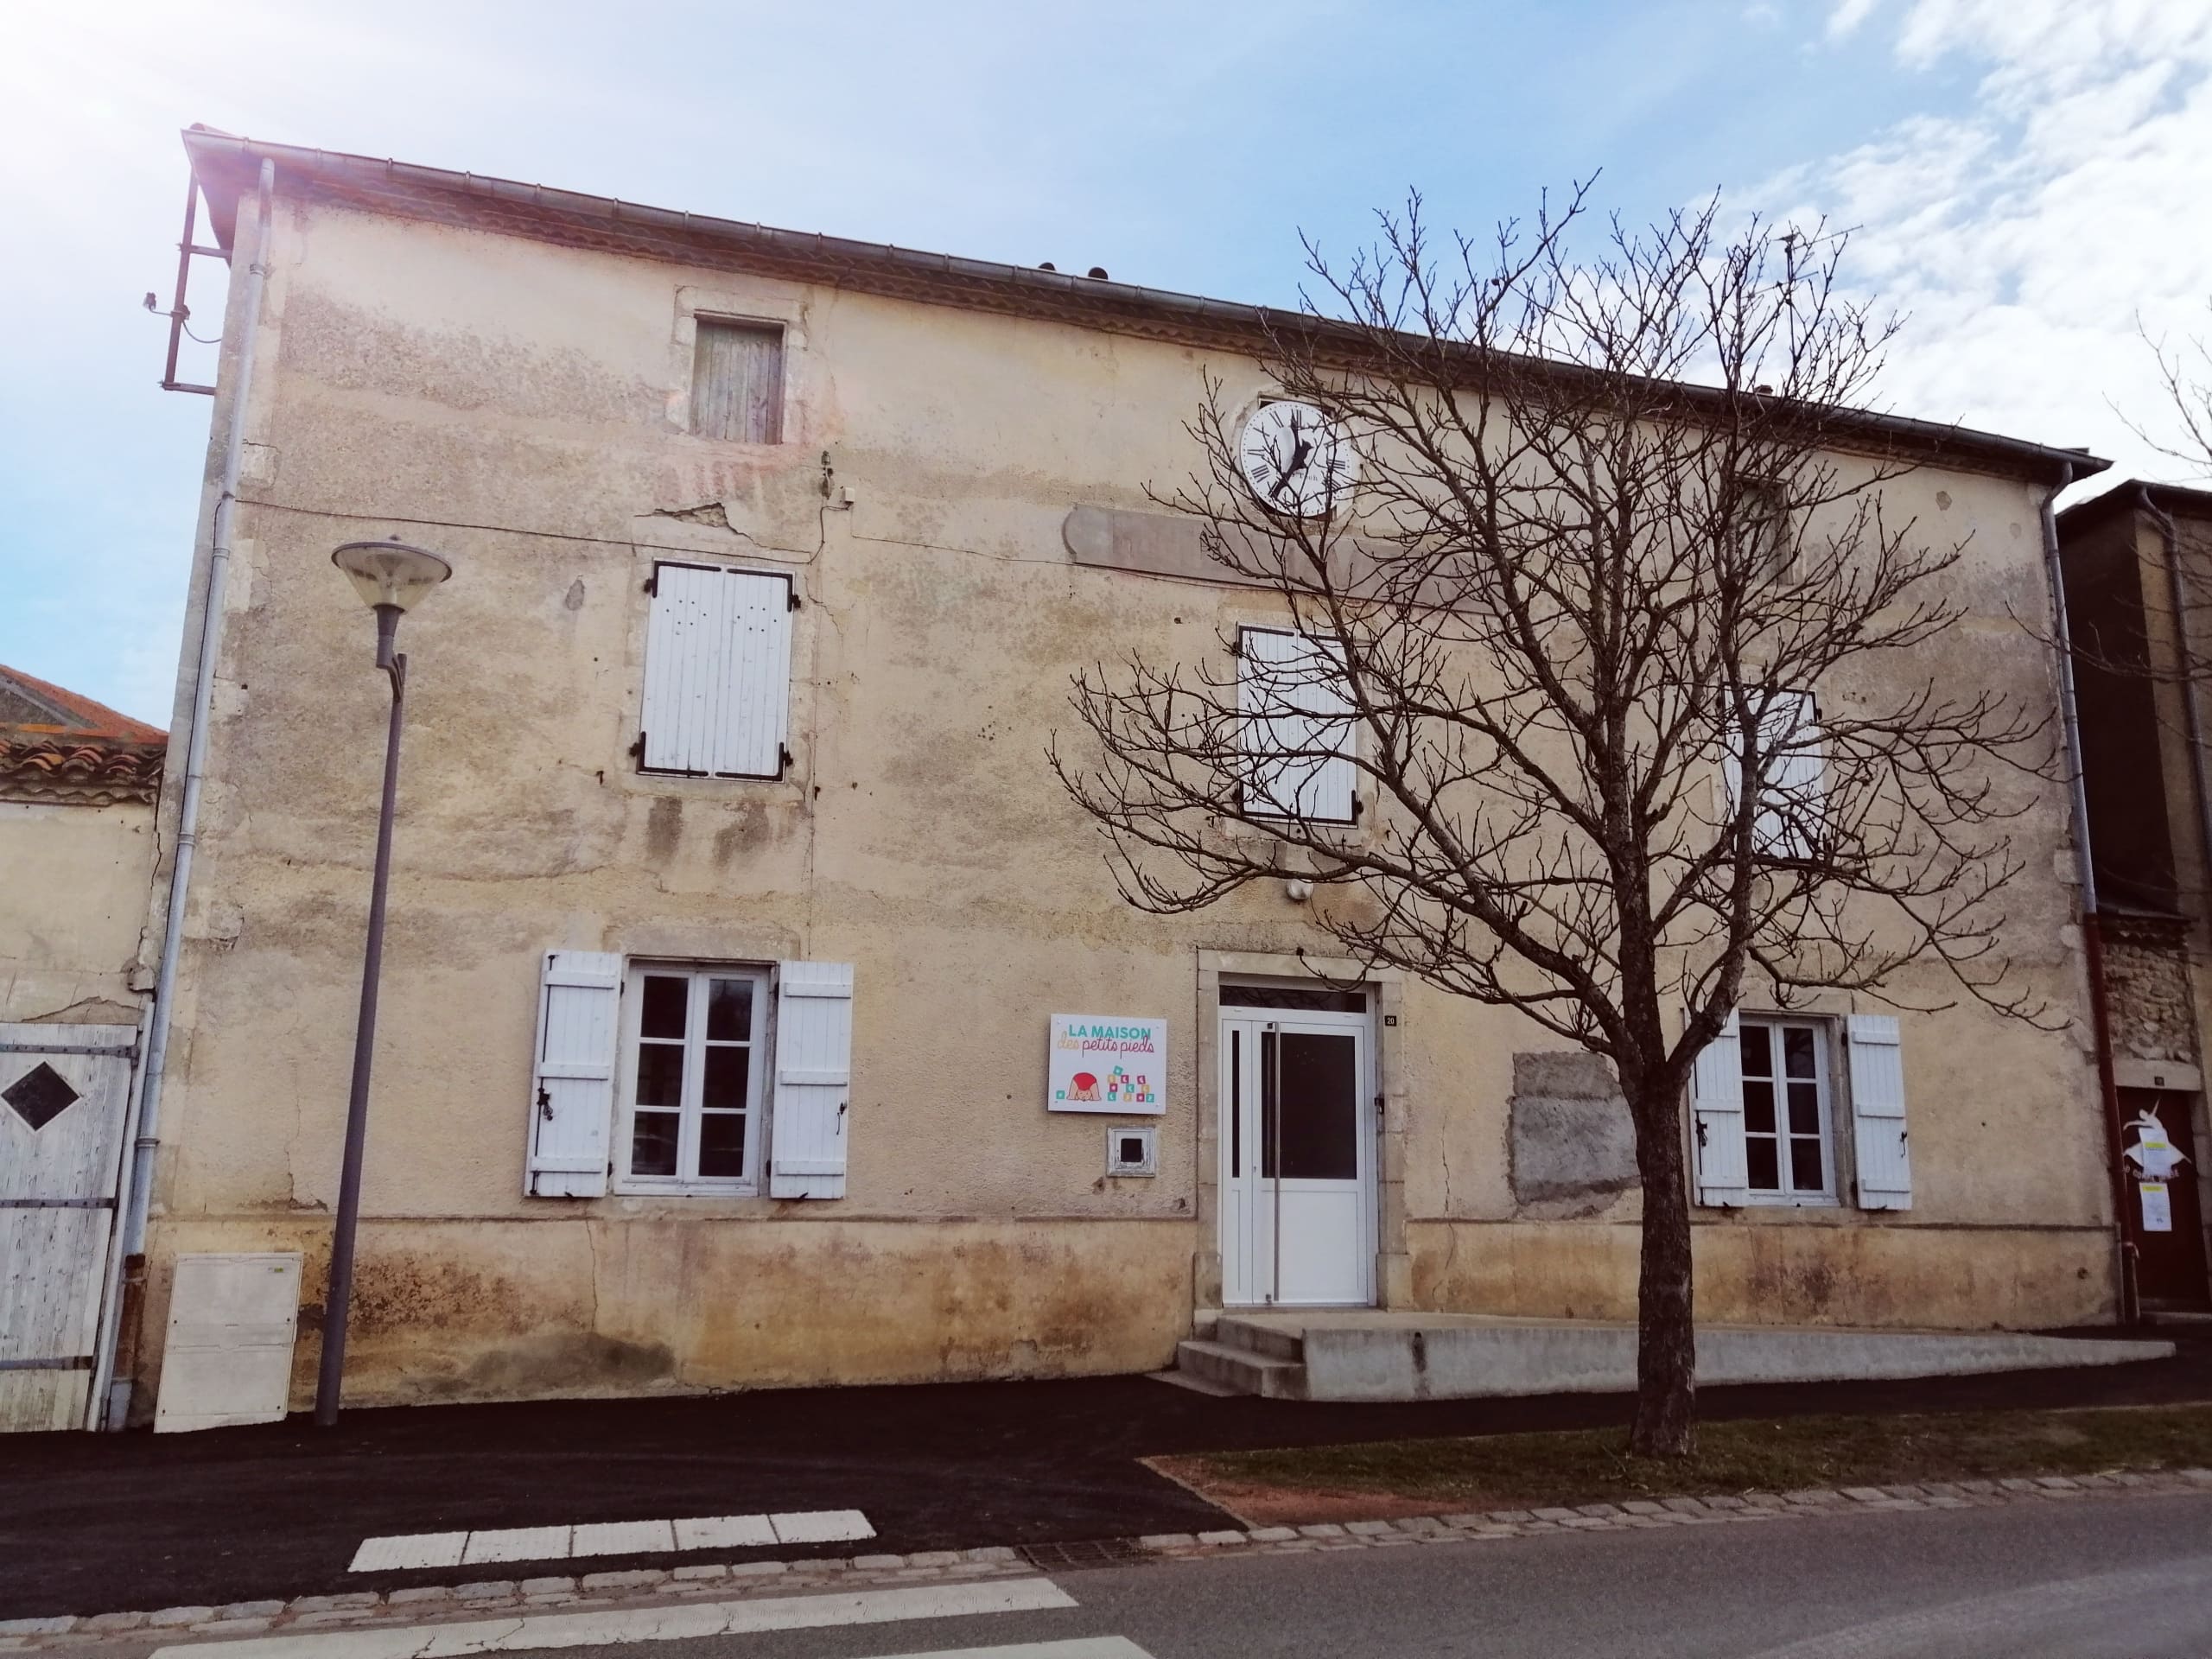 Maison des assistantes maternelles (MAM) - Site officiel de la ville de  Pierrefitte-sur-Seine